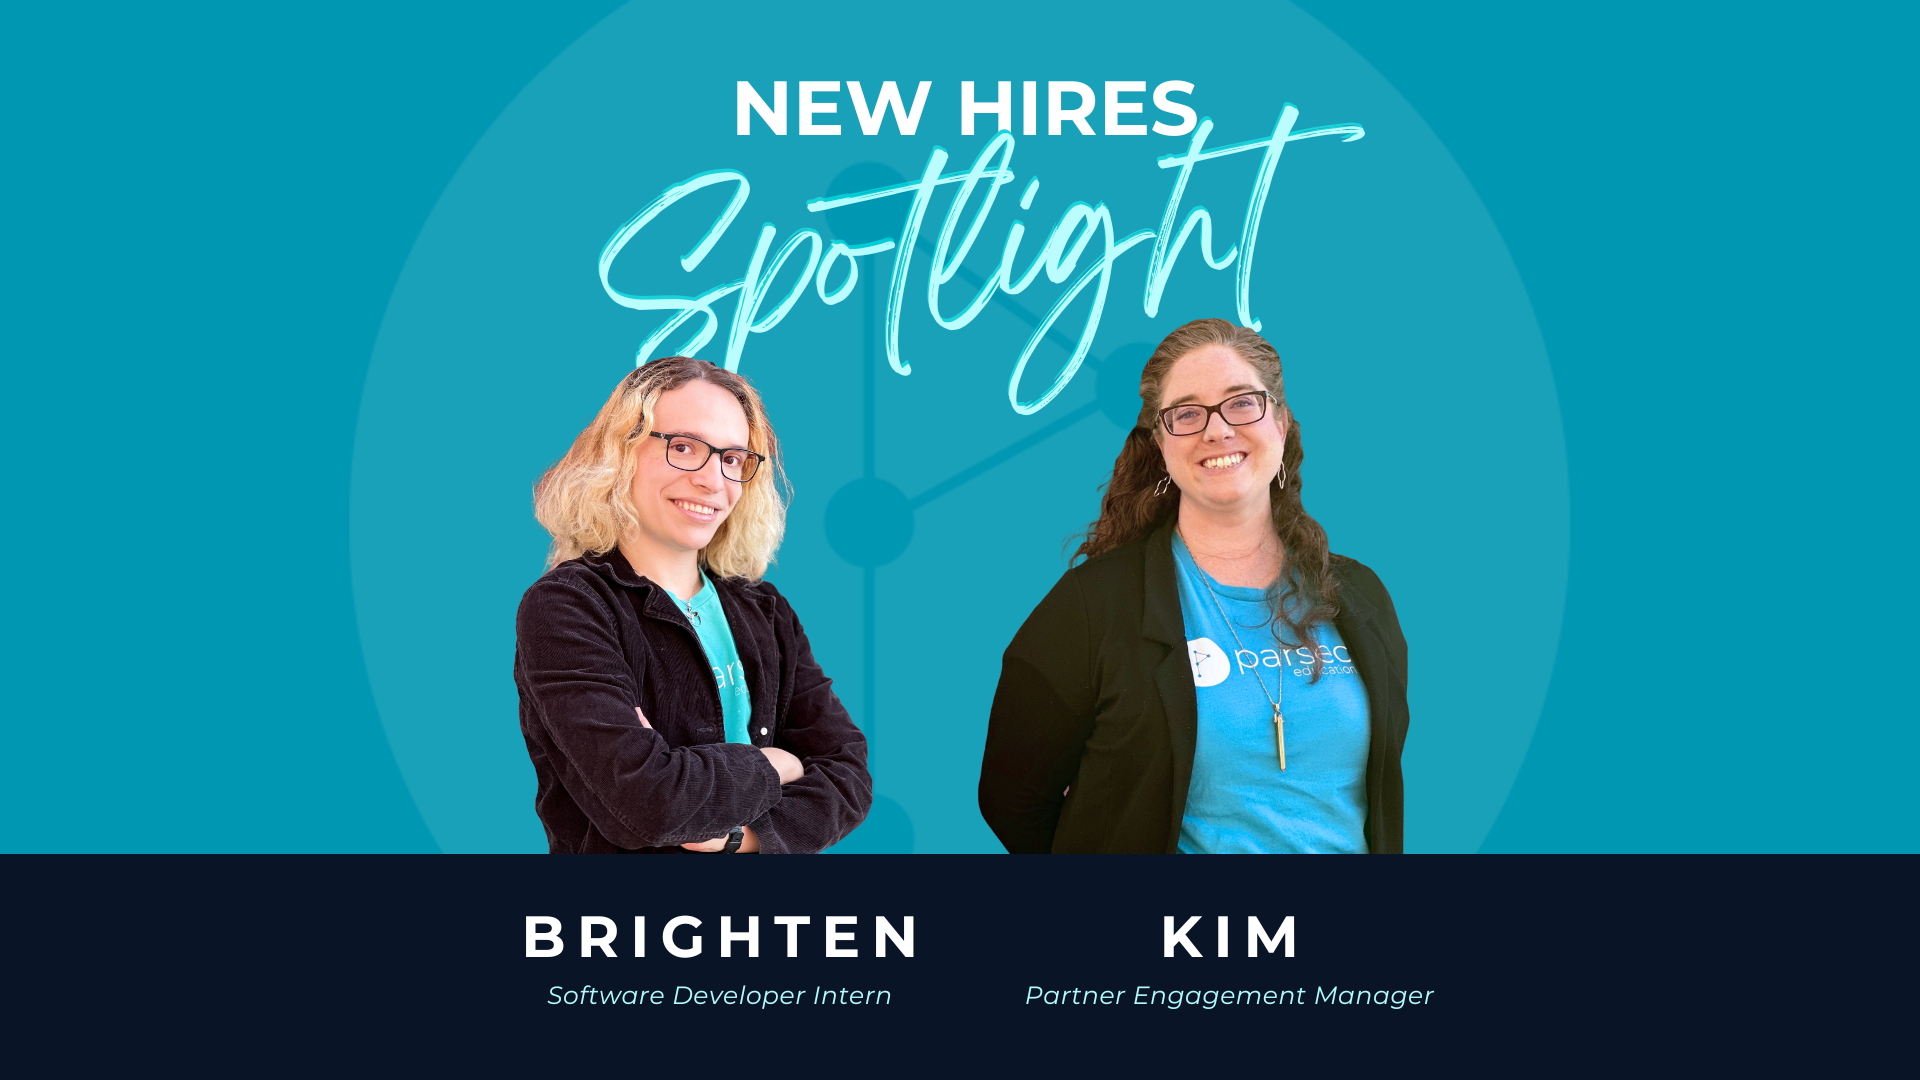 New Hires Spotlight: Meet Brighten & Kim